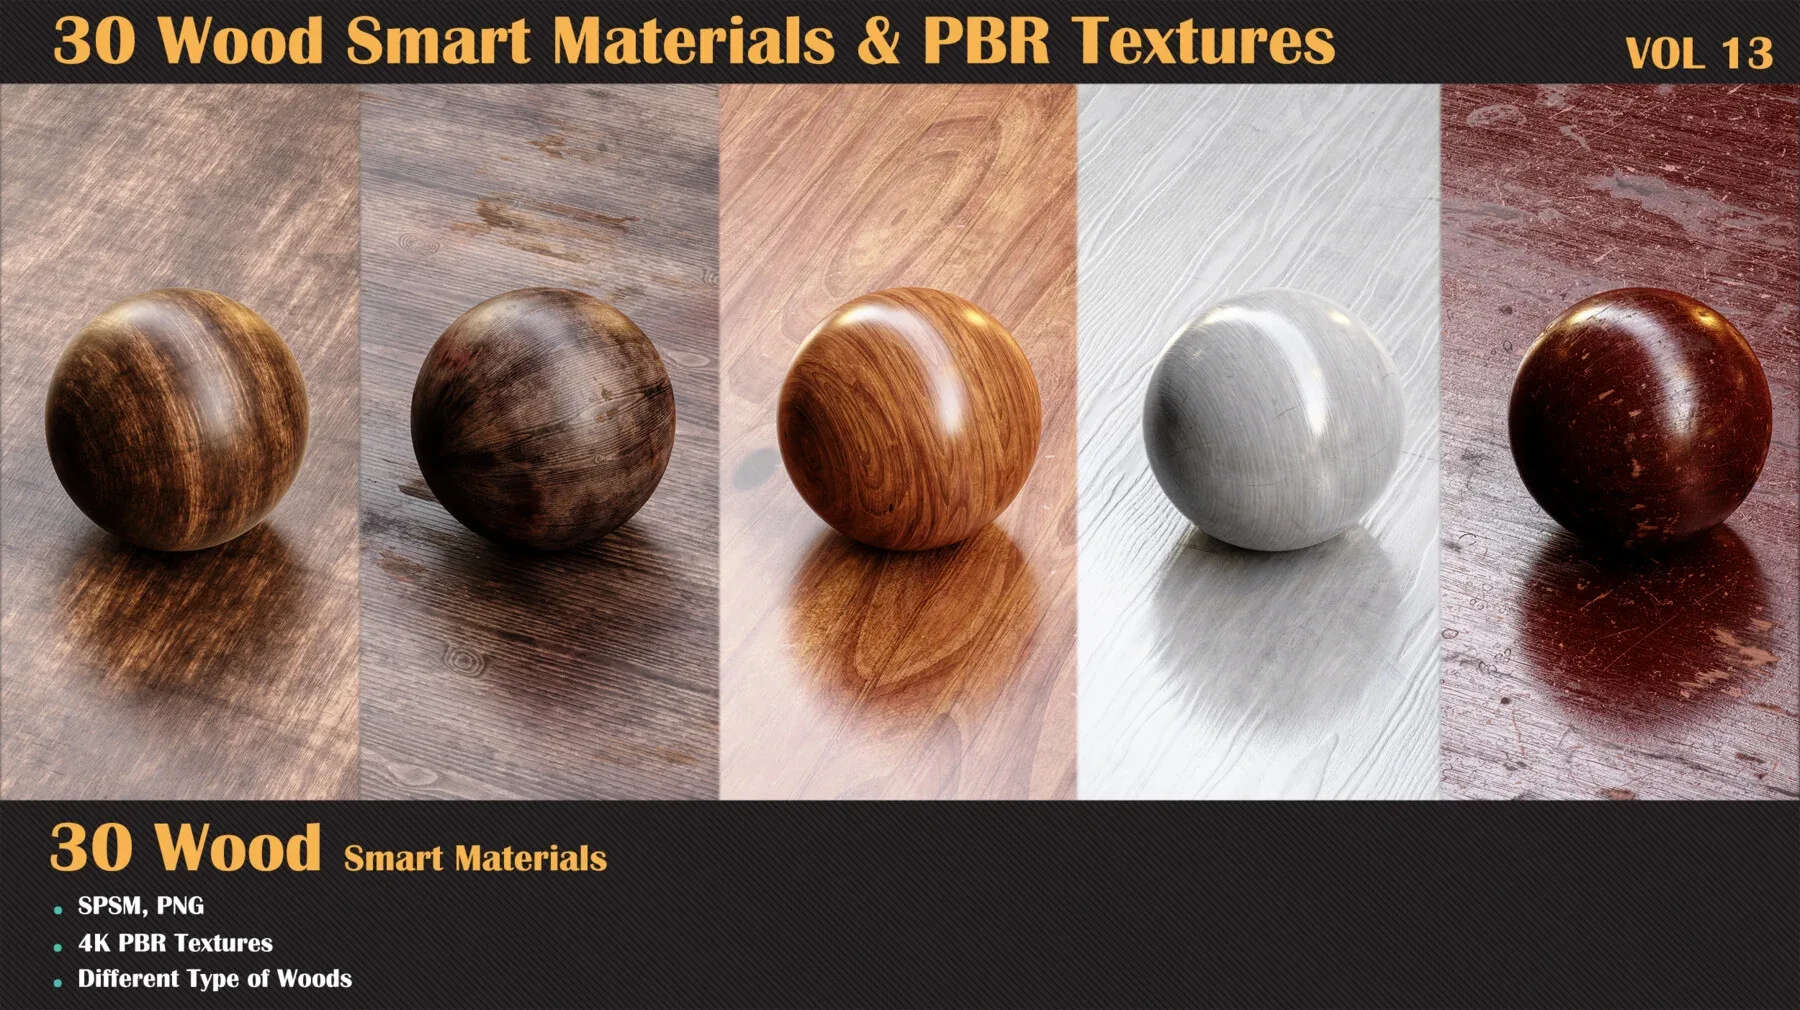 30 Wood Smart Materials & PBR Textures - Vol 13